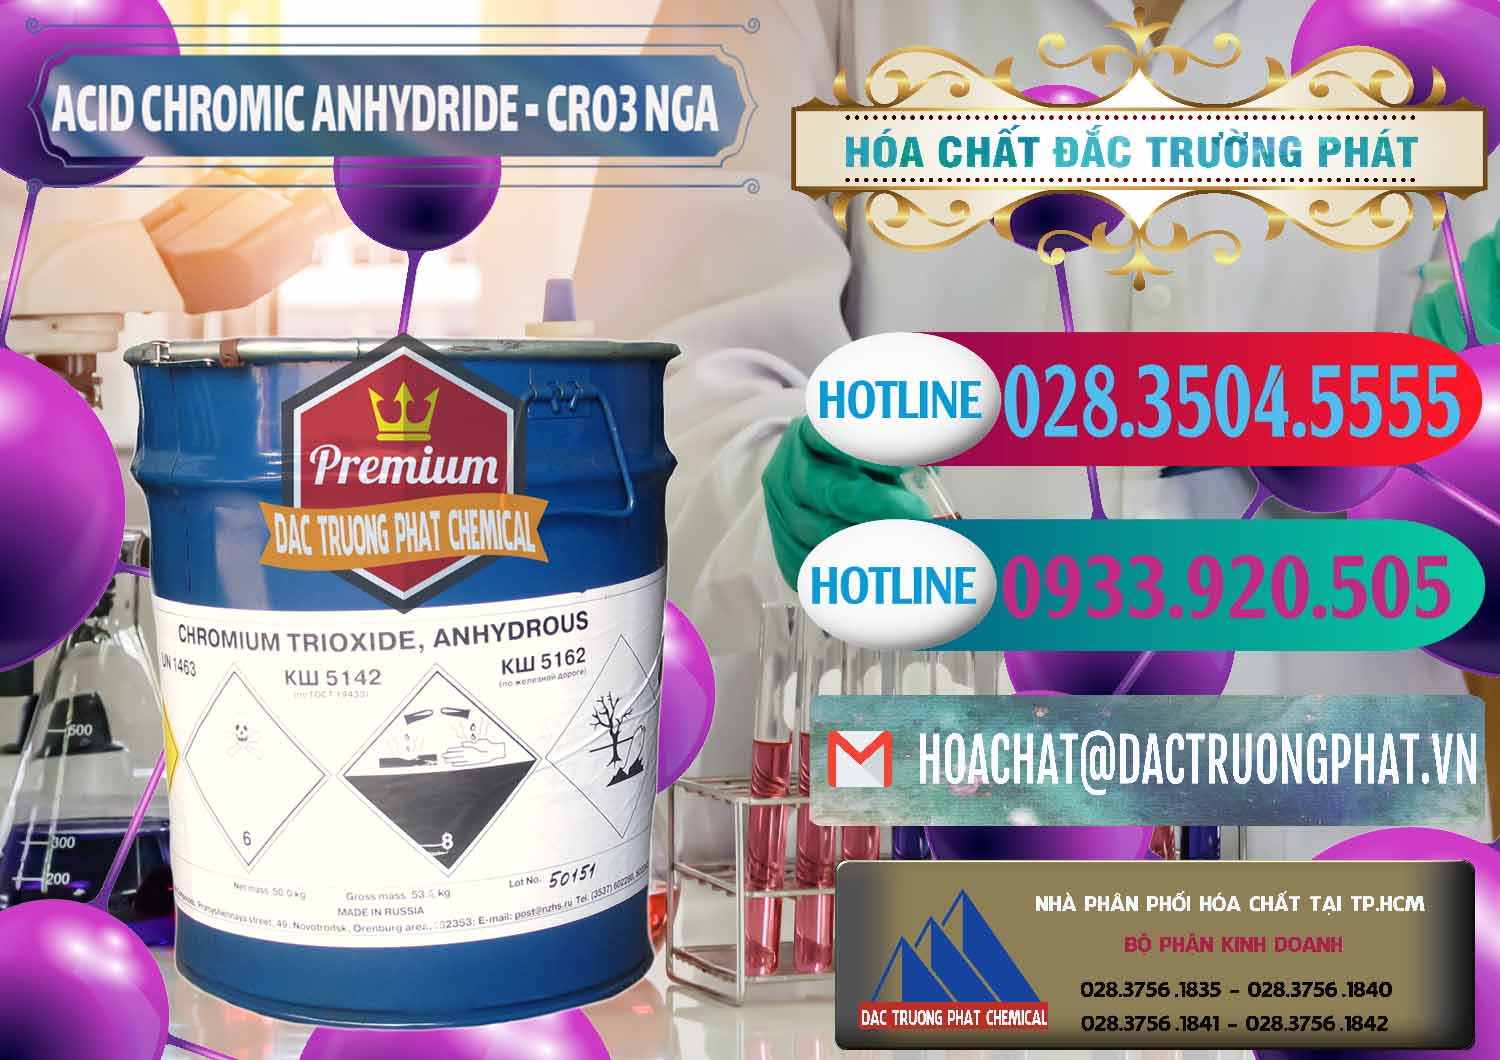 Đơn vị nhập khẩu & bán Acid Chromic Anhydride - Cromic CRO3 Nga Russia - 0006 - Nơi cung cấp - phân phối hóa chất tại TP.HCM - truongphat.vn